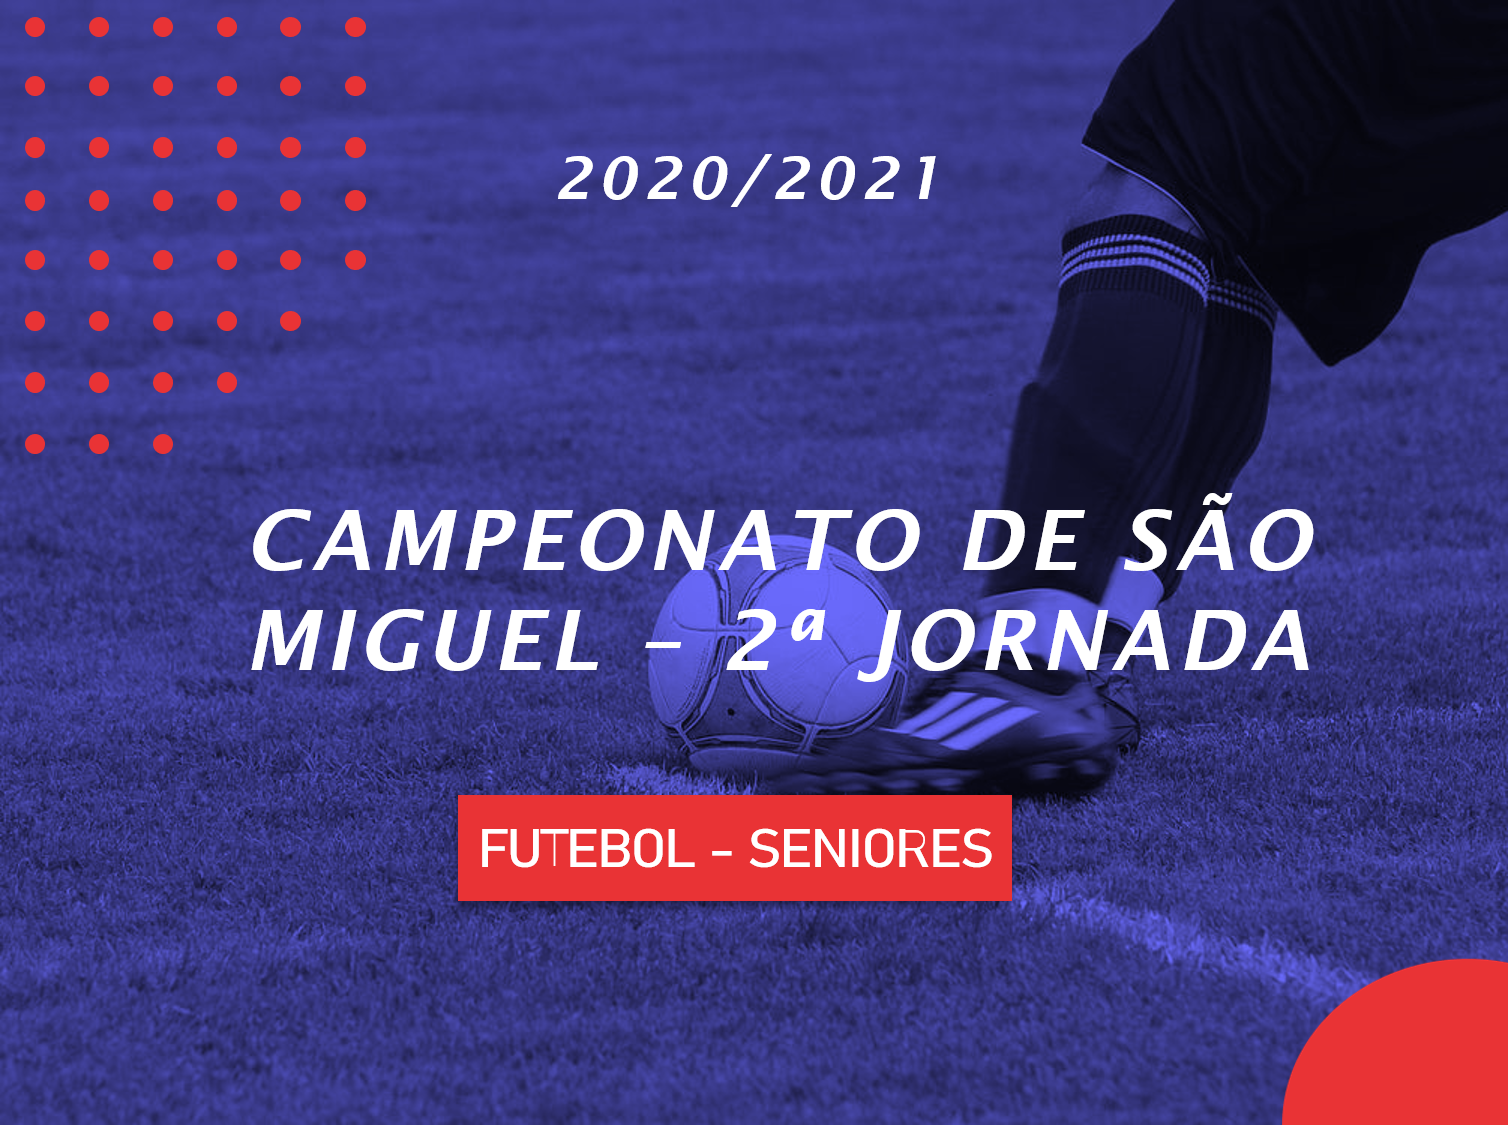 Campeonato de São Miguel - 2ª Jornada - Seniores - Antevisão